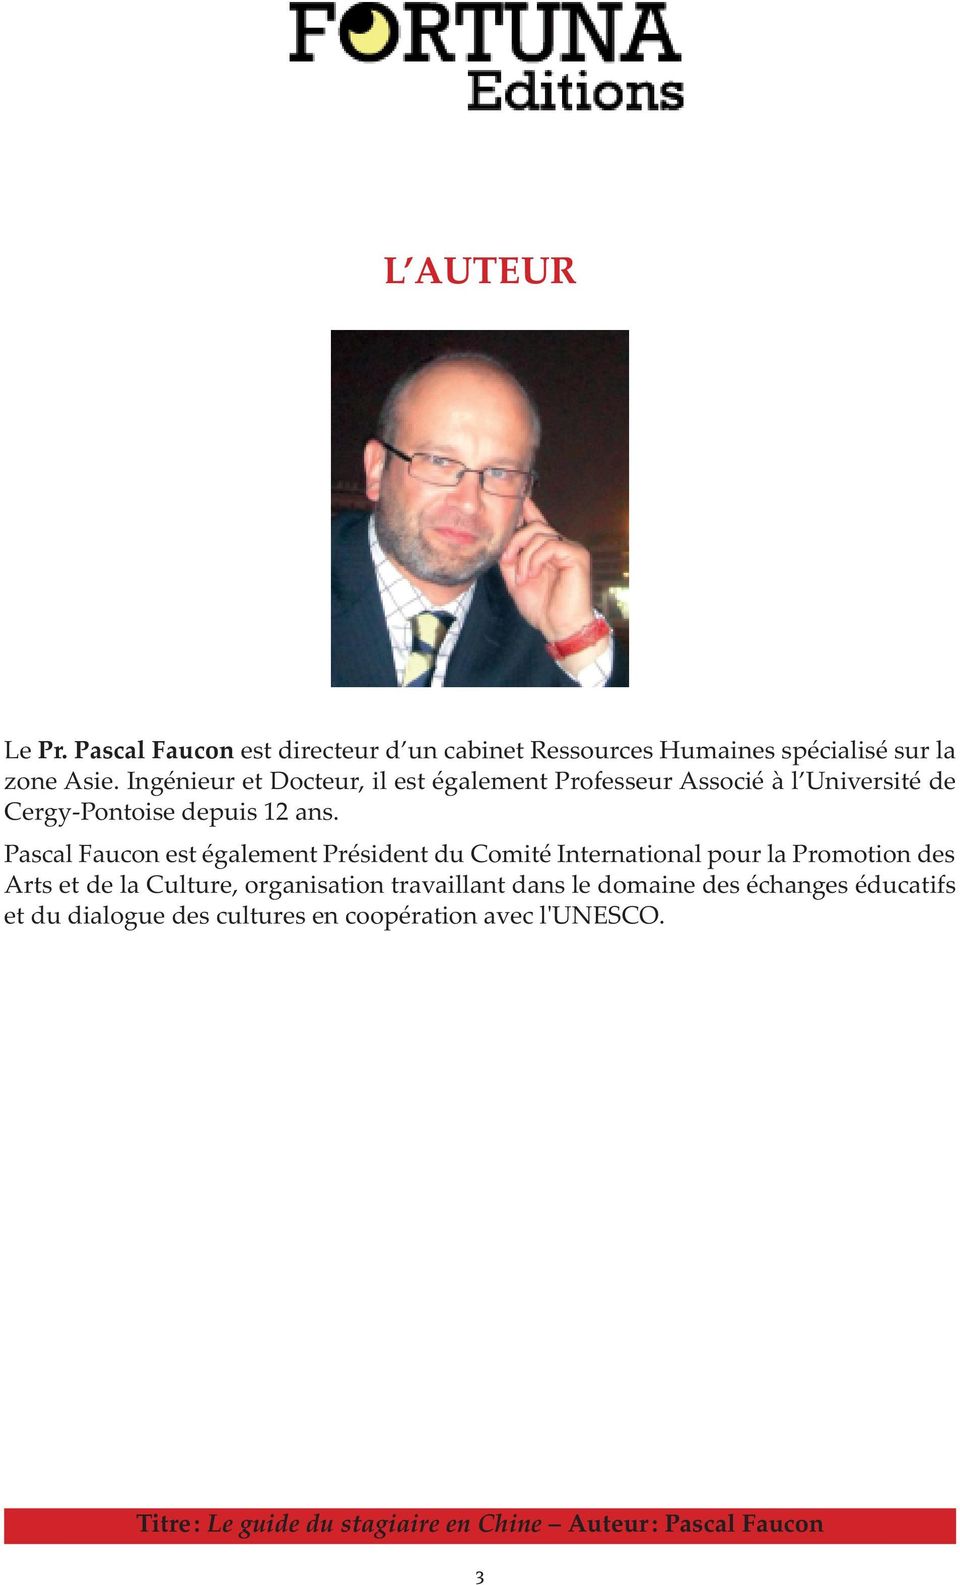 Pascal Faucon est également Président du Comité International pour la Promotion des Arts et de la Culture, organisation